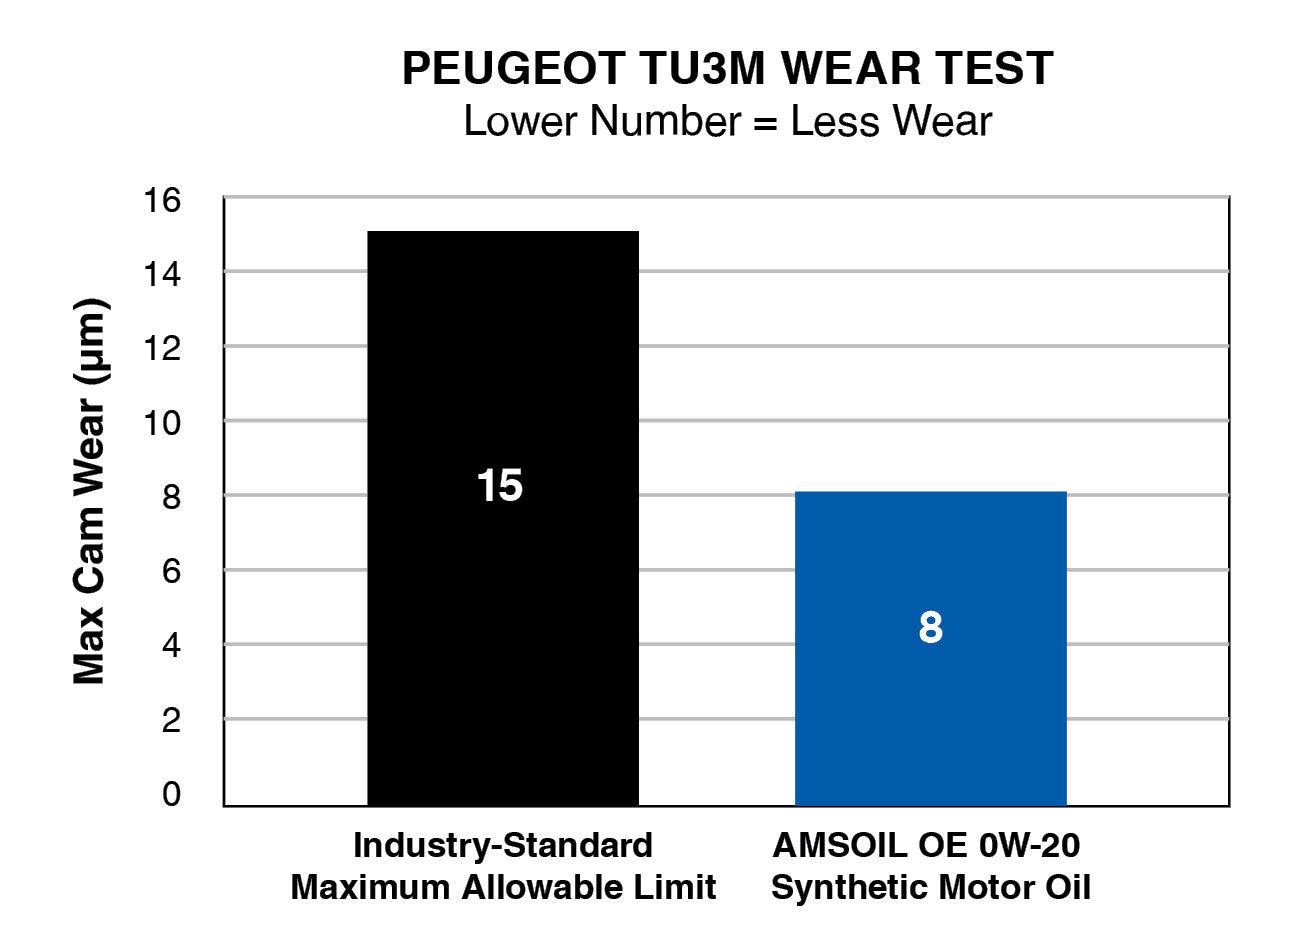 Peugeot TU3M Wear Test (Lower Number = Less Wear)